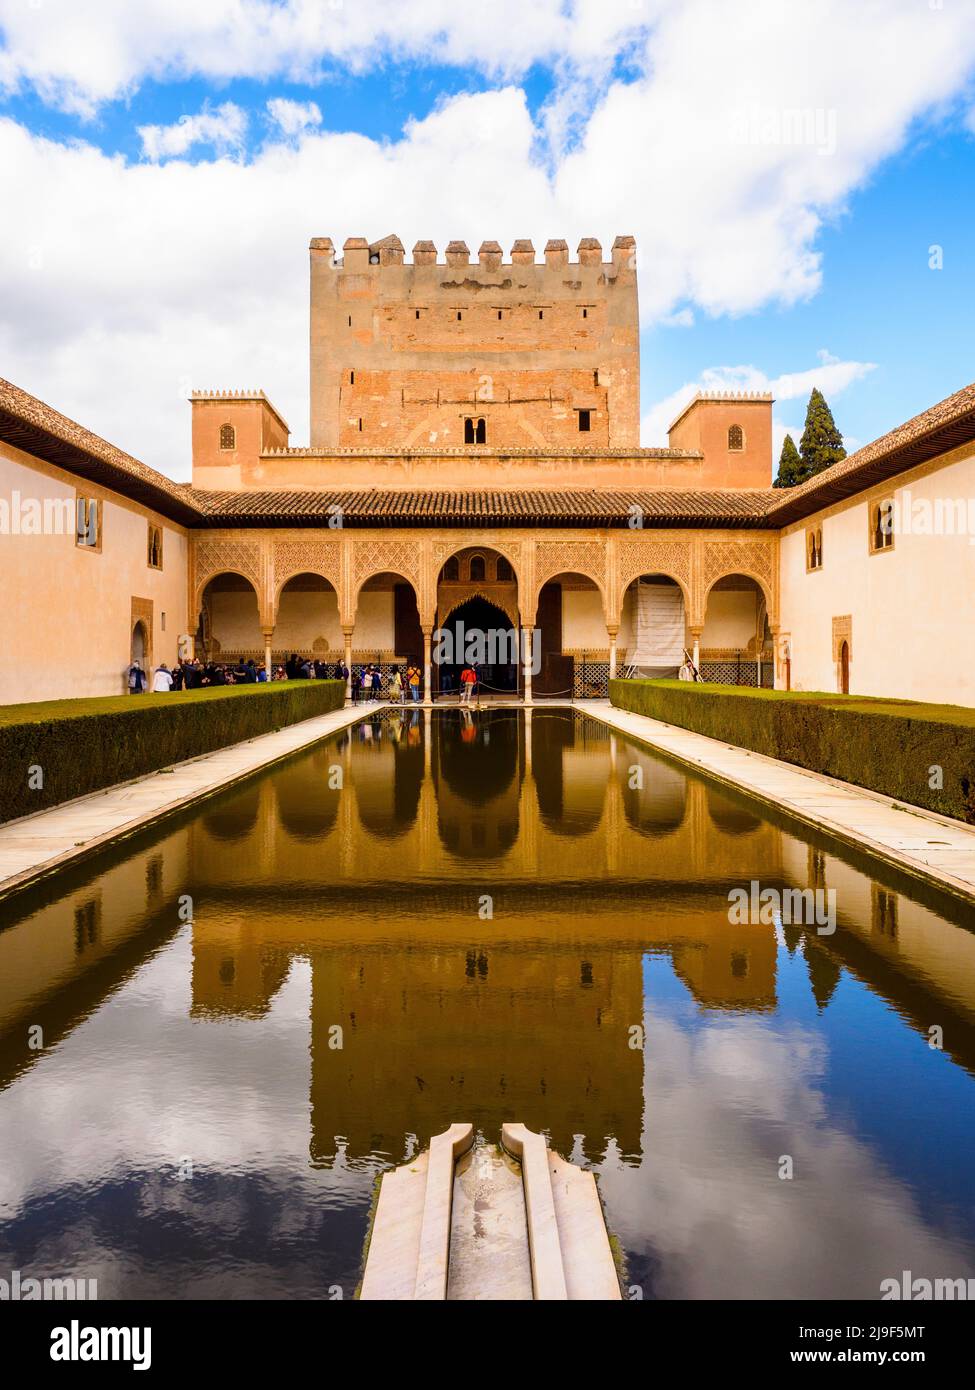 Der Pool des Hofes der Myrtles, mit Blick auf den Comares-Turm auf der Nordseite in den Nasriden-Palästen - Alhambra-Komplex - Granada, Spanien Stockfoto